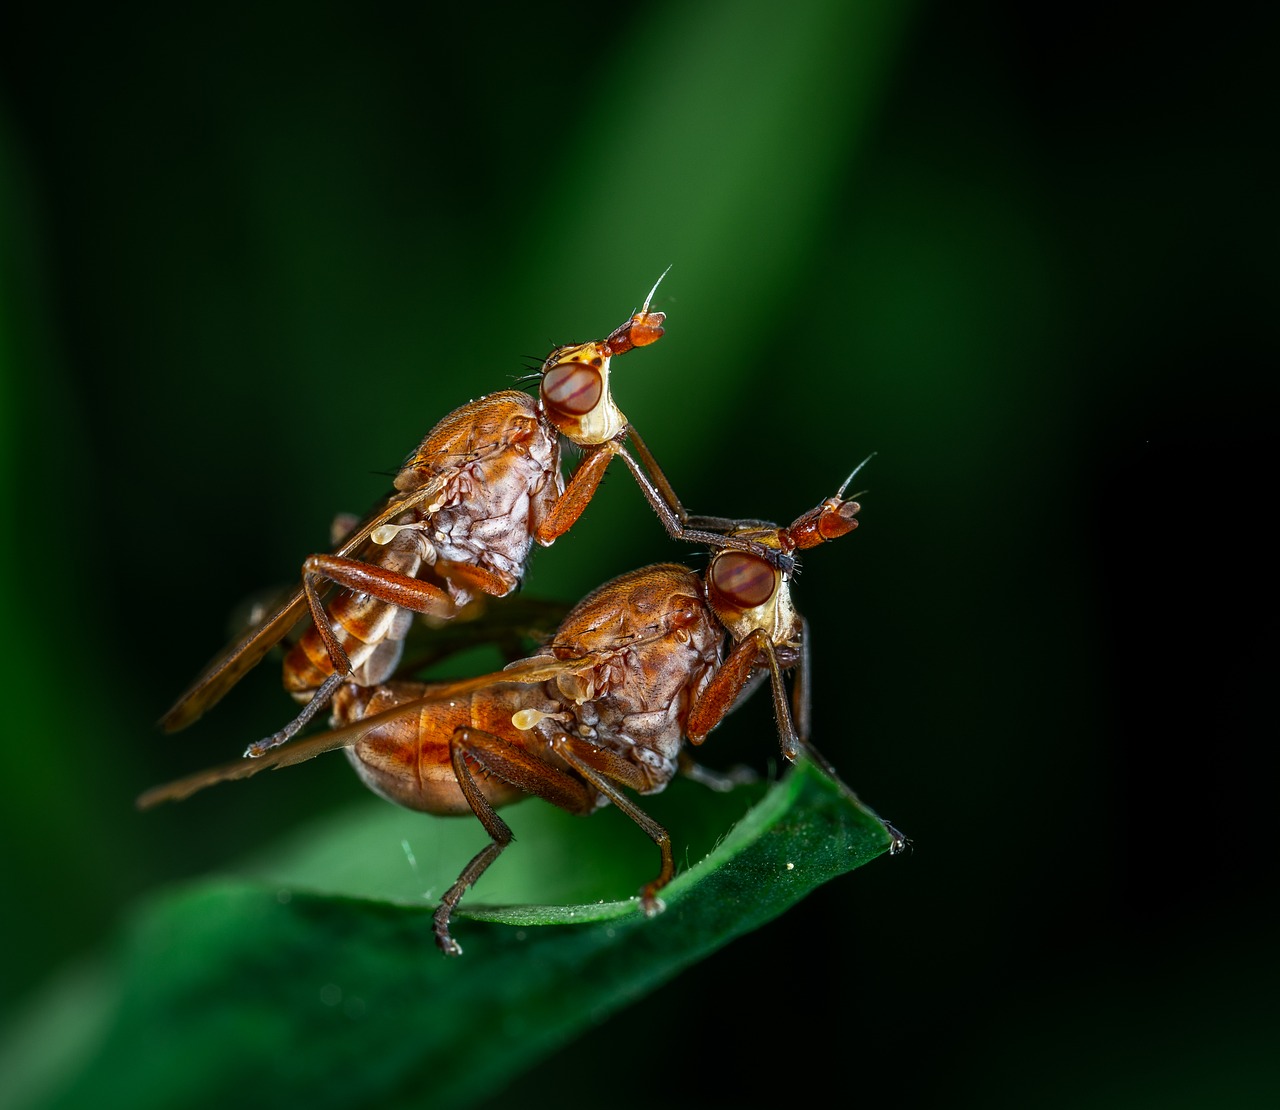 macro  bespozvonochnoe  insect free photo